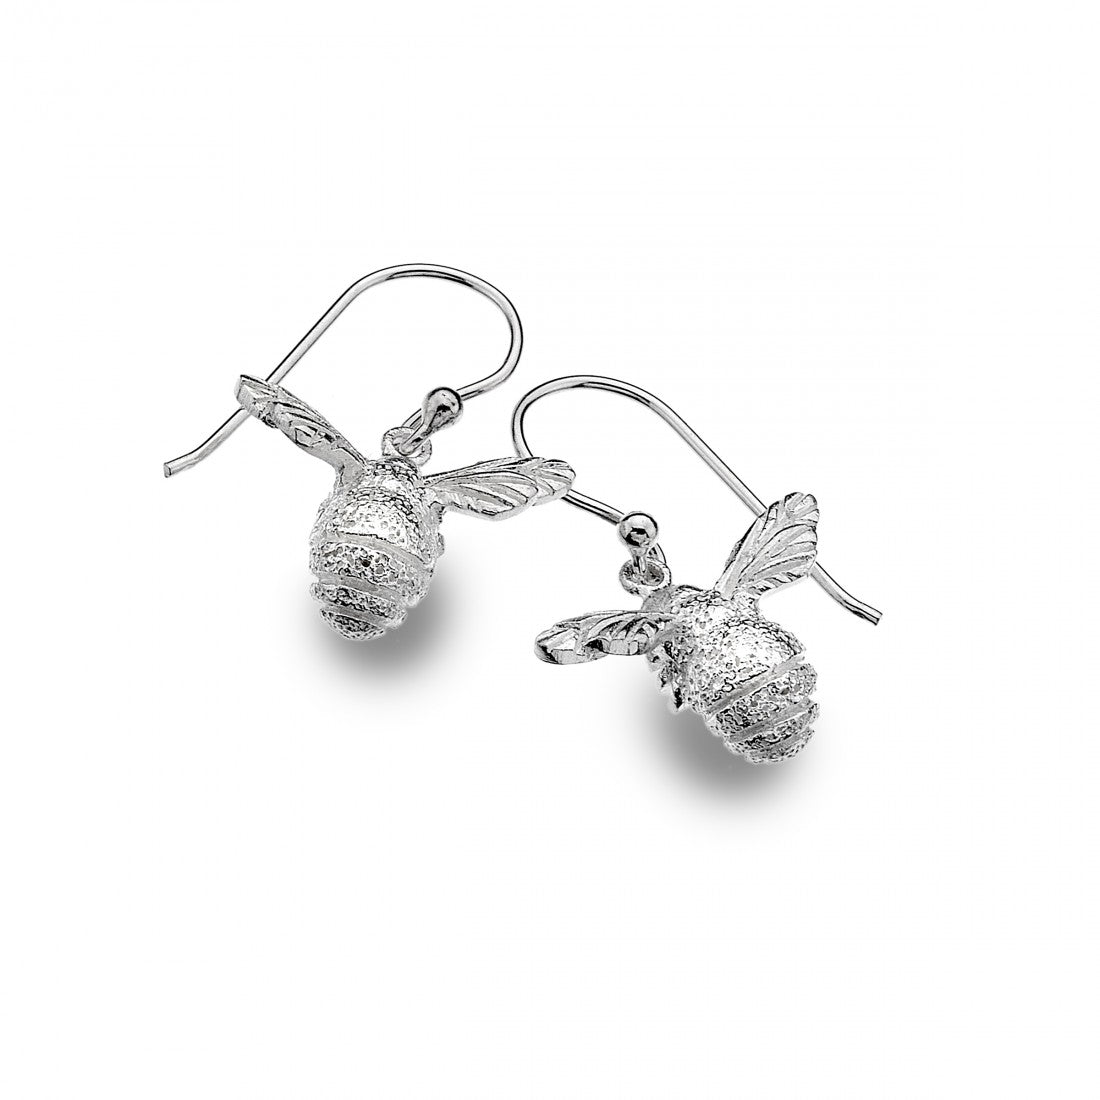 Bee Earrings - The Nancy Smillie Shop - Art, Jewellery & Designer Gifts Glasgow